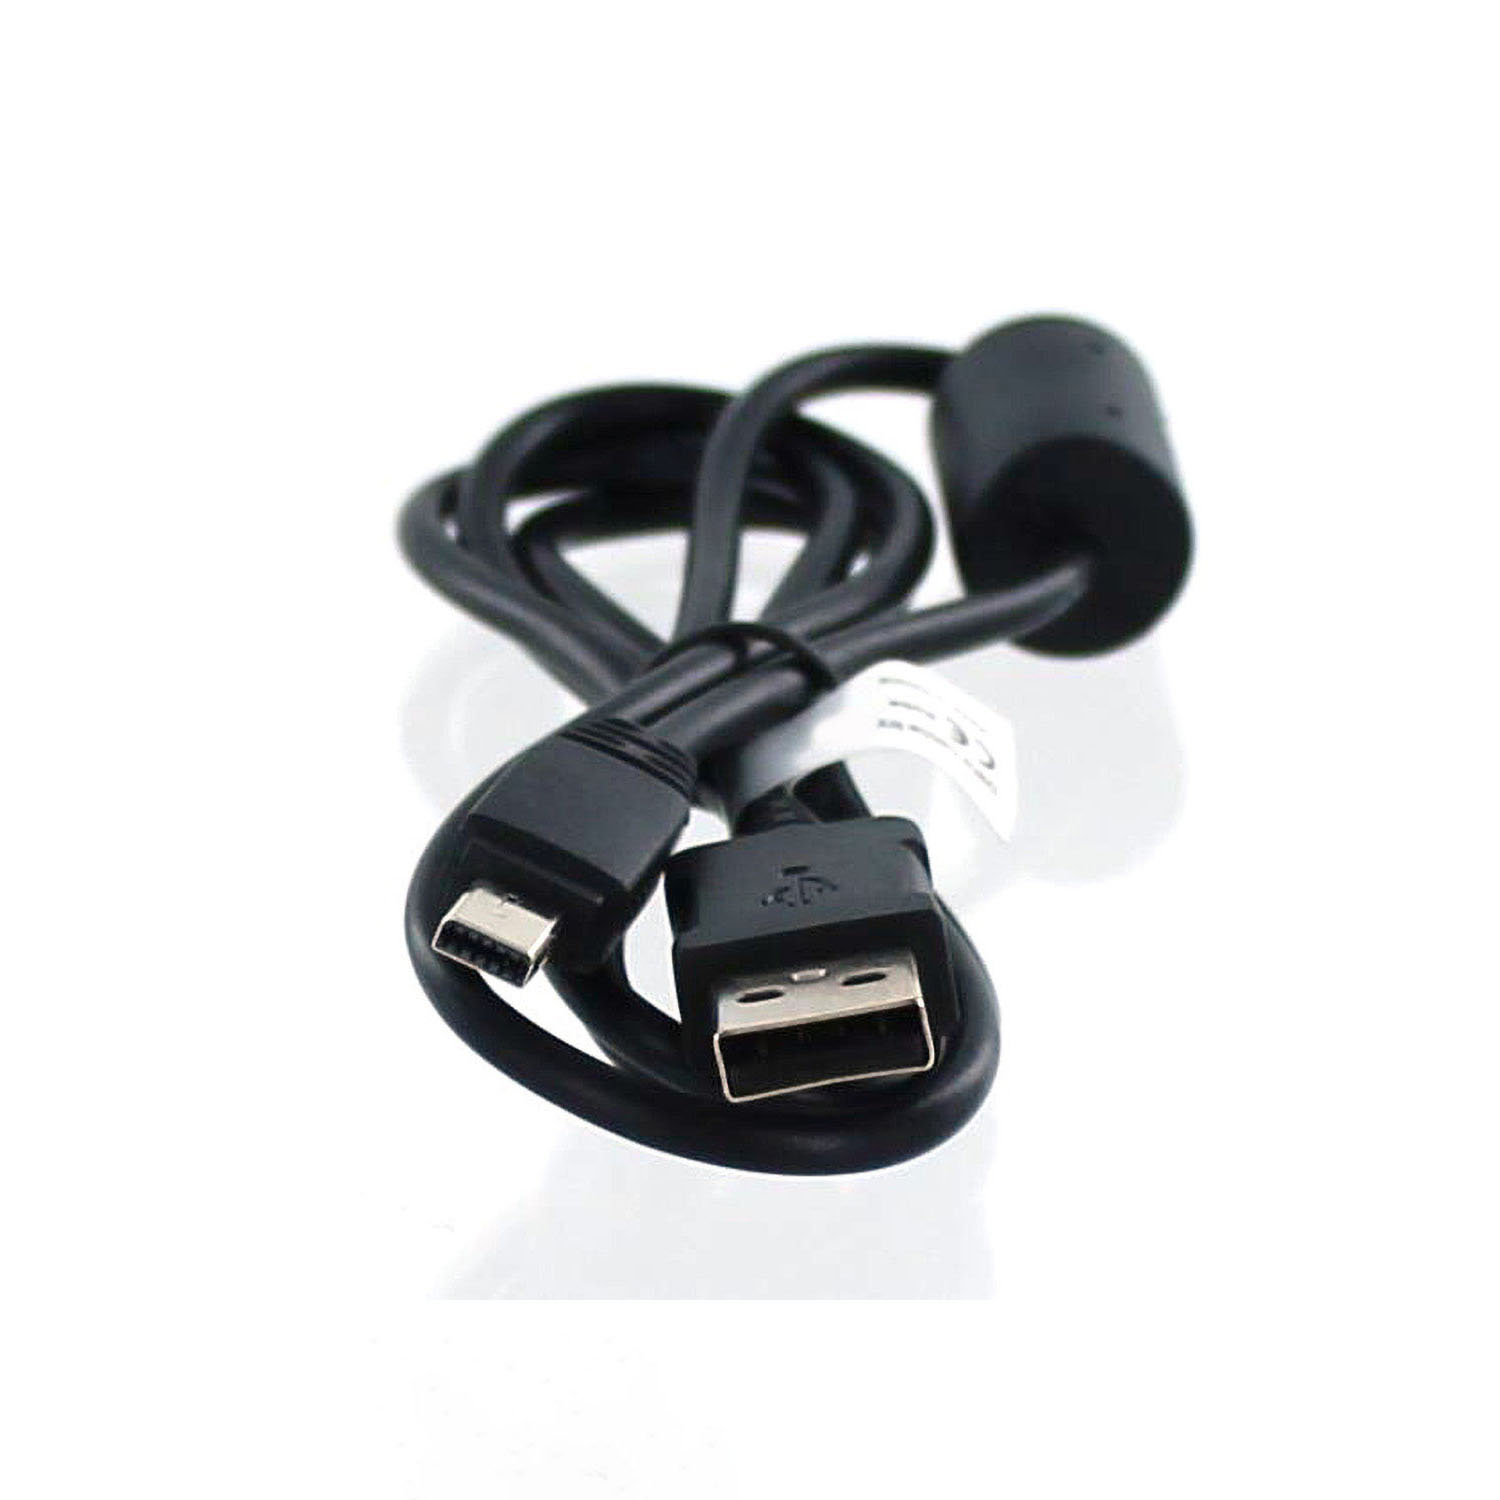 USB-Datenkabel schwarz MOBILOTEC Zubehör EMC-6 kompatibel mit Casio Casio,